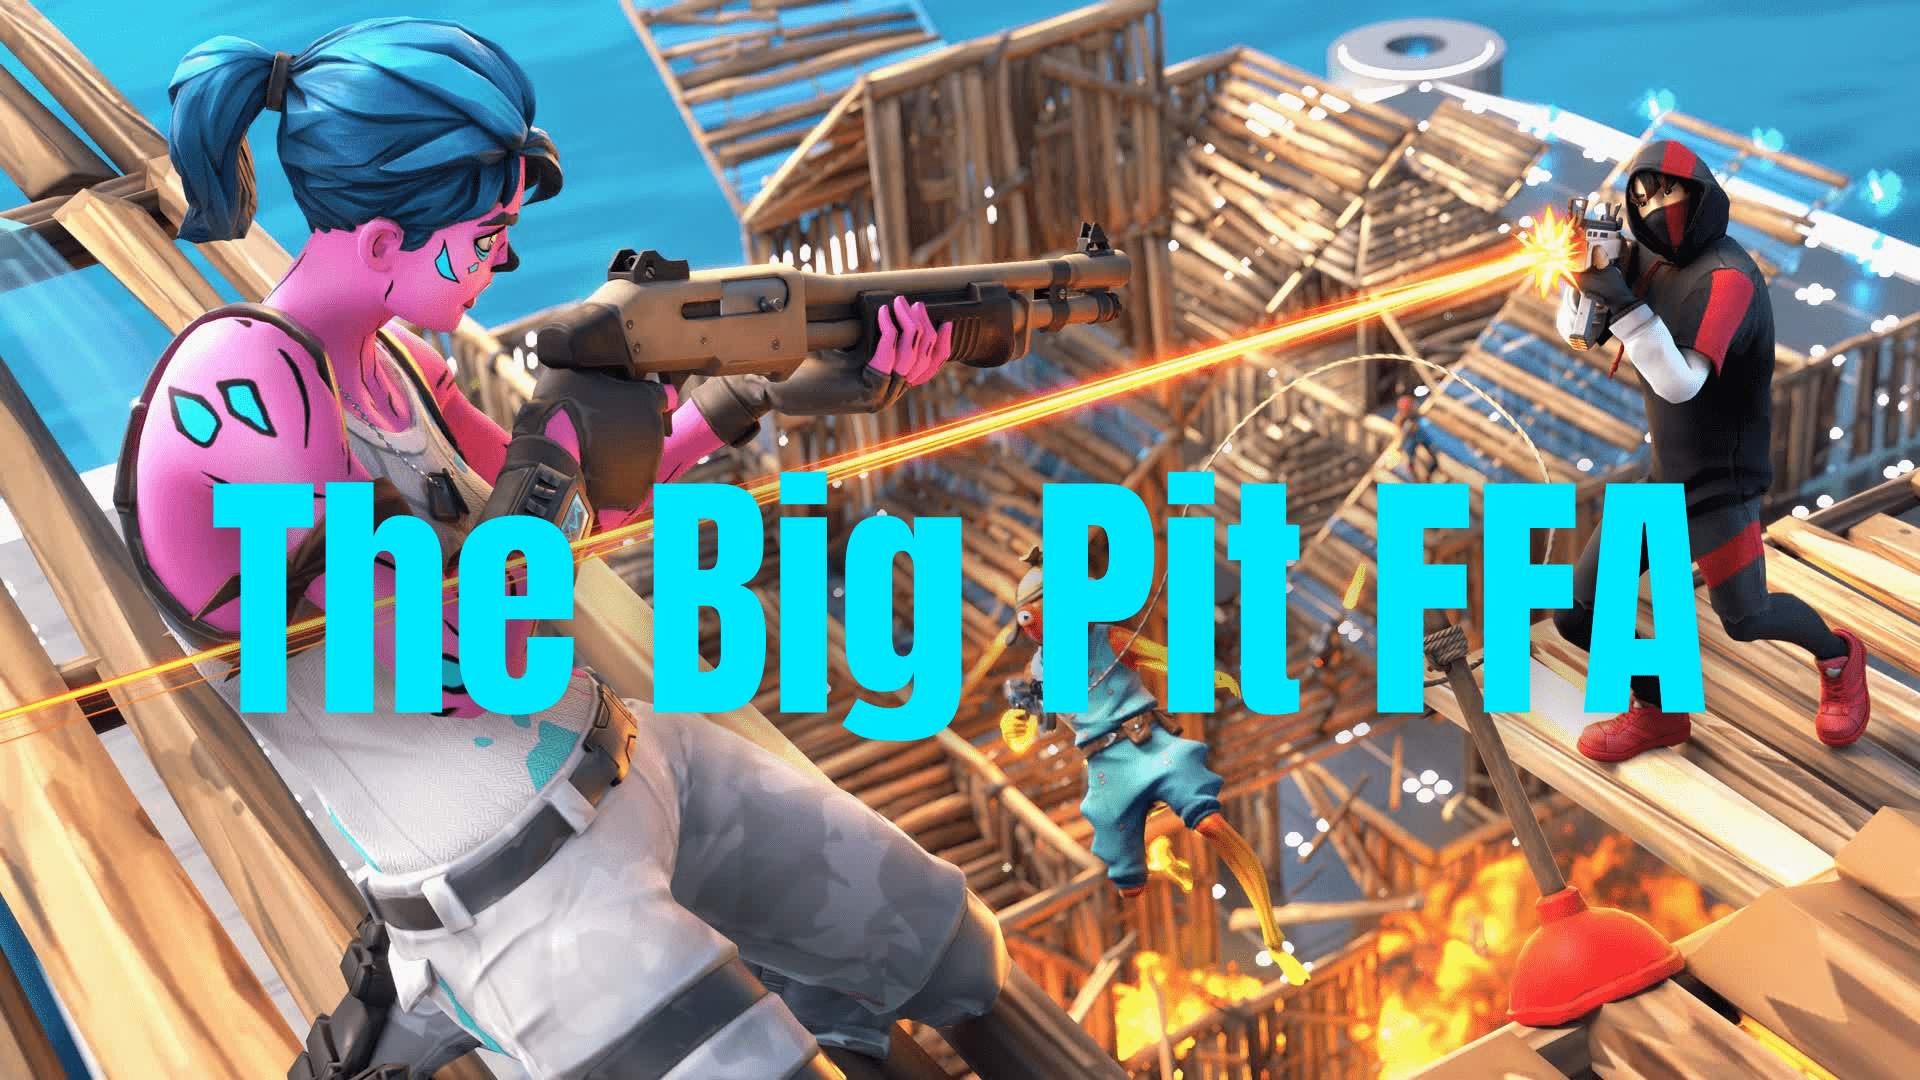 The Big Pit FFA